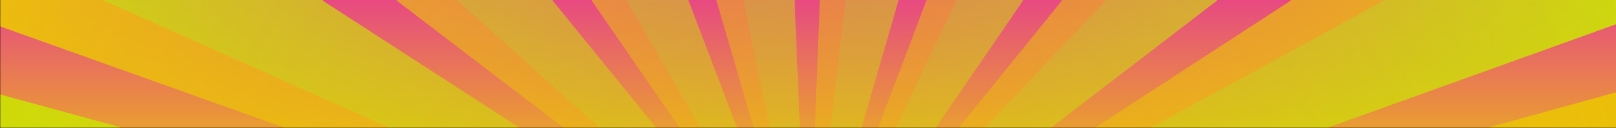 Coloured sunburst banner